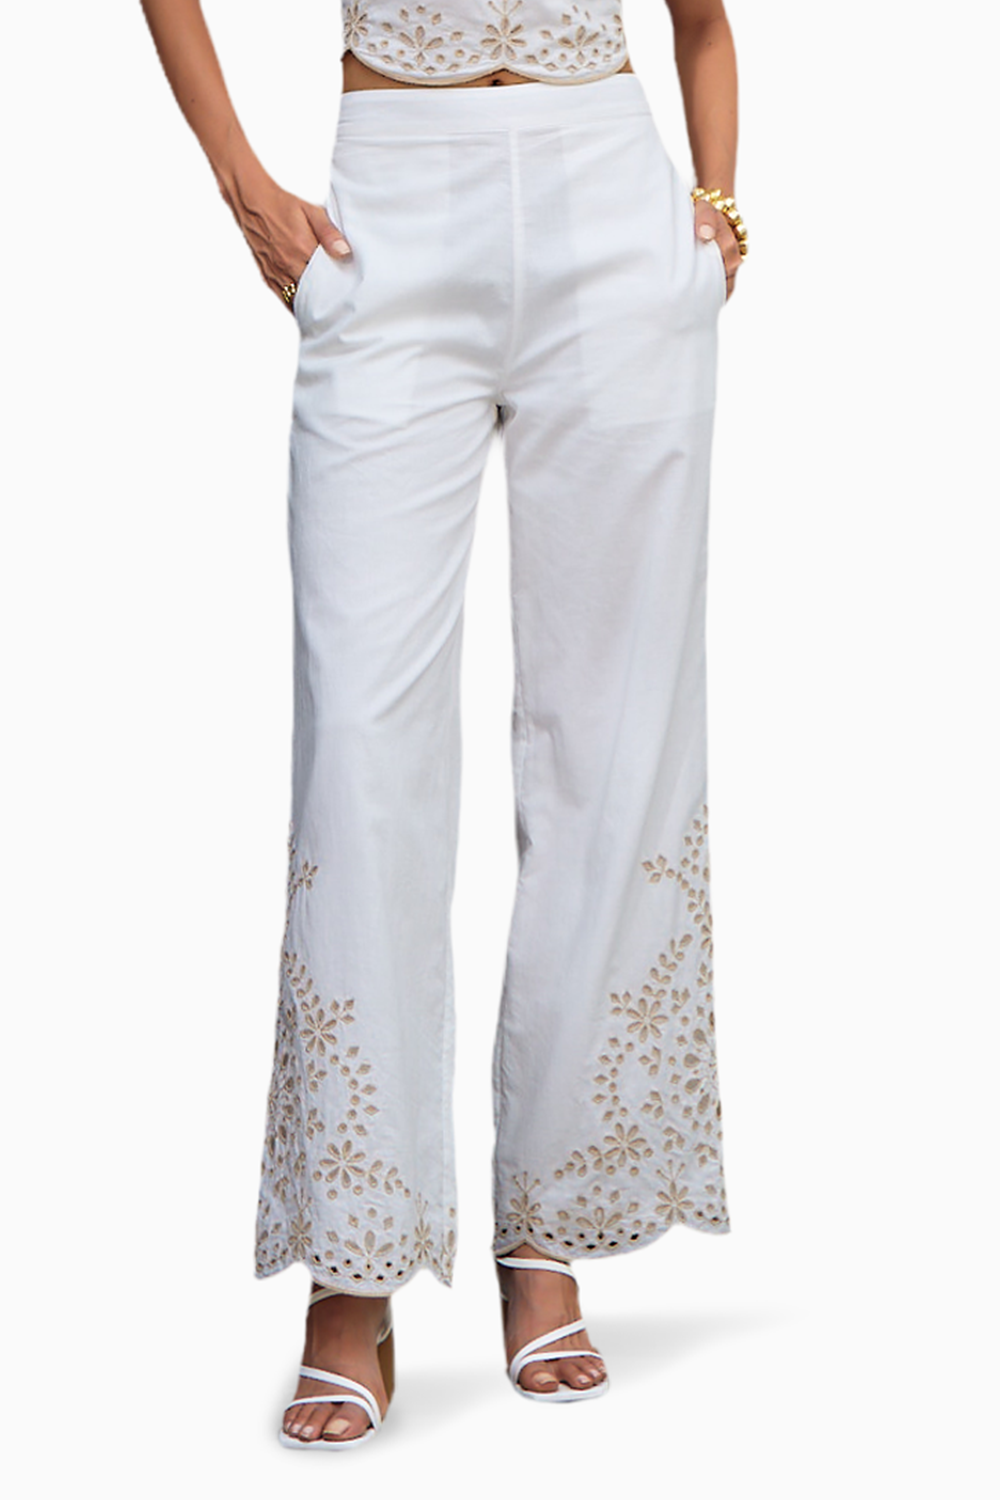 Romneya White Embroidered Trouser